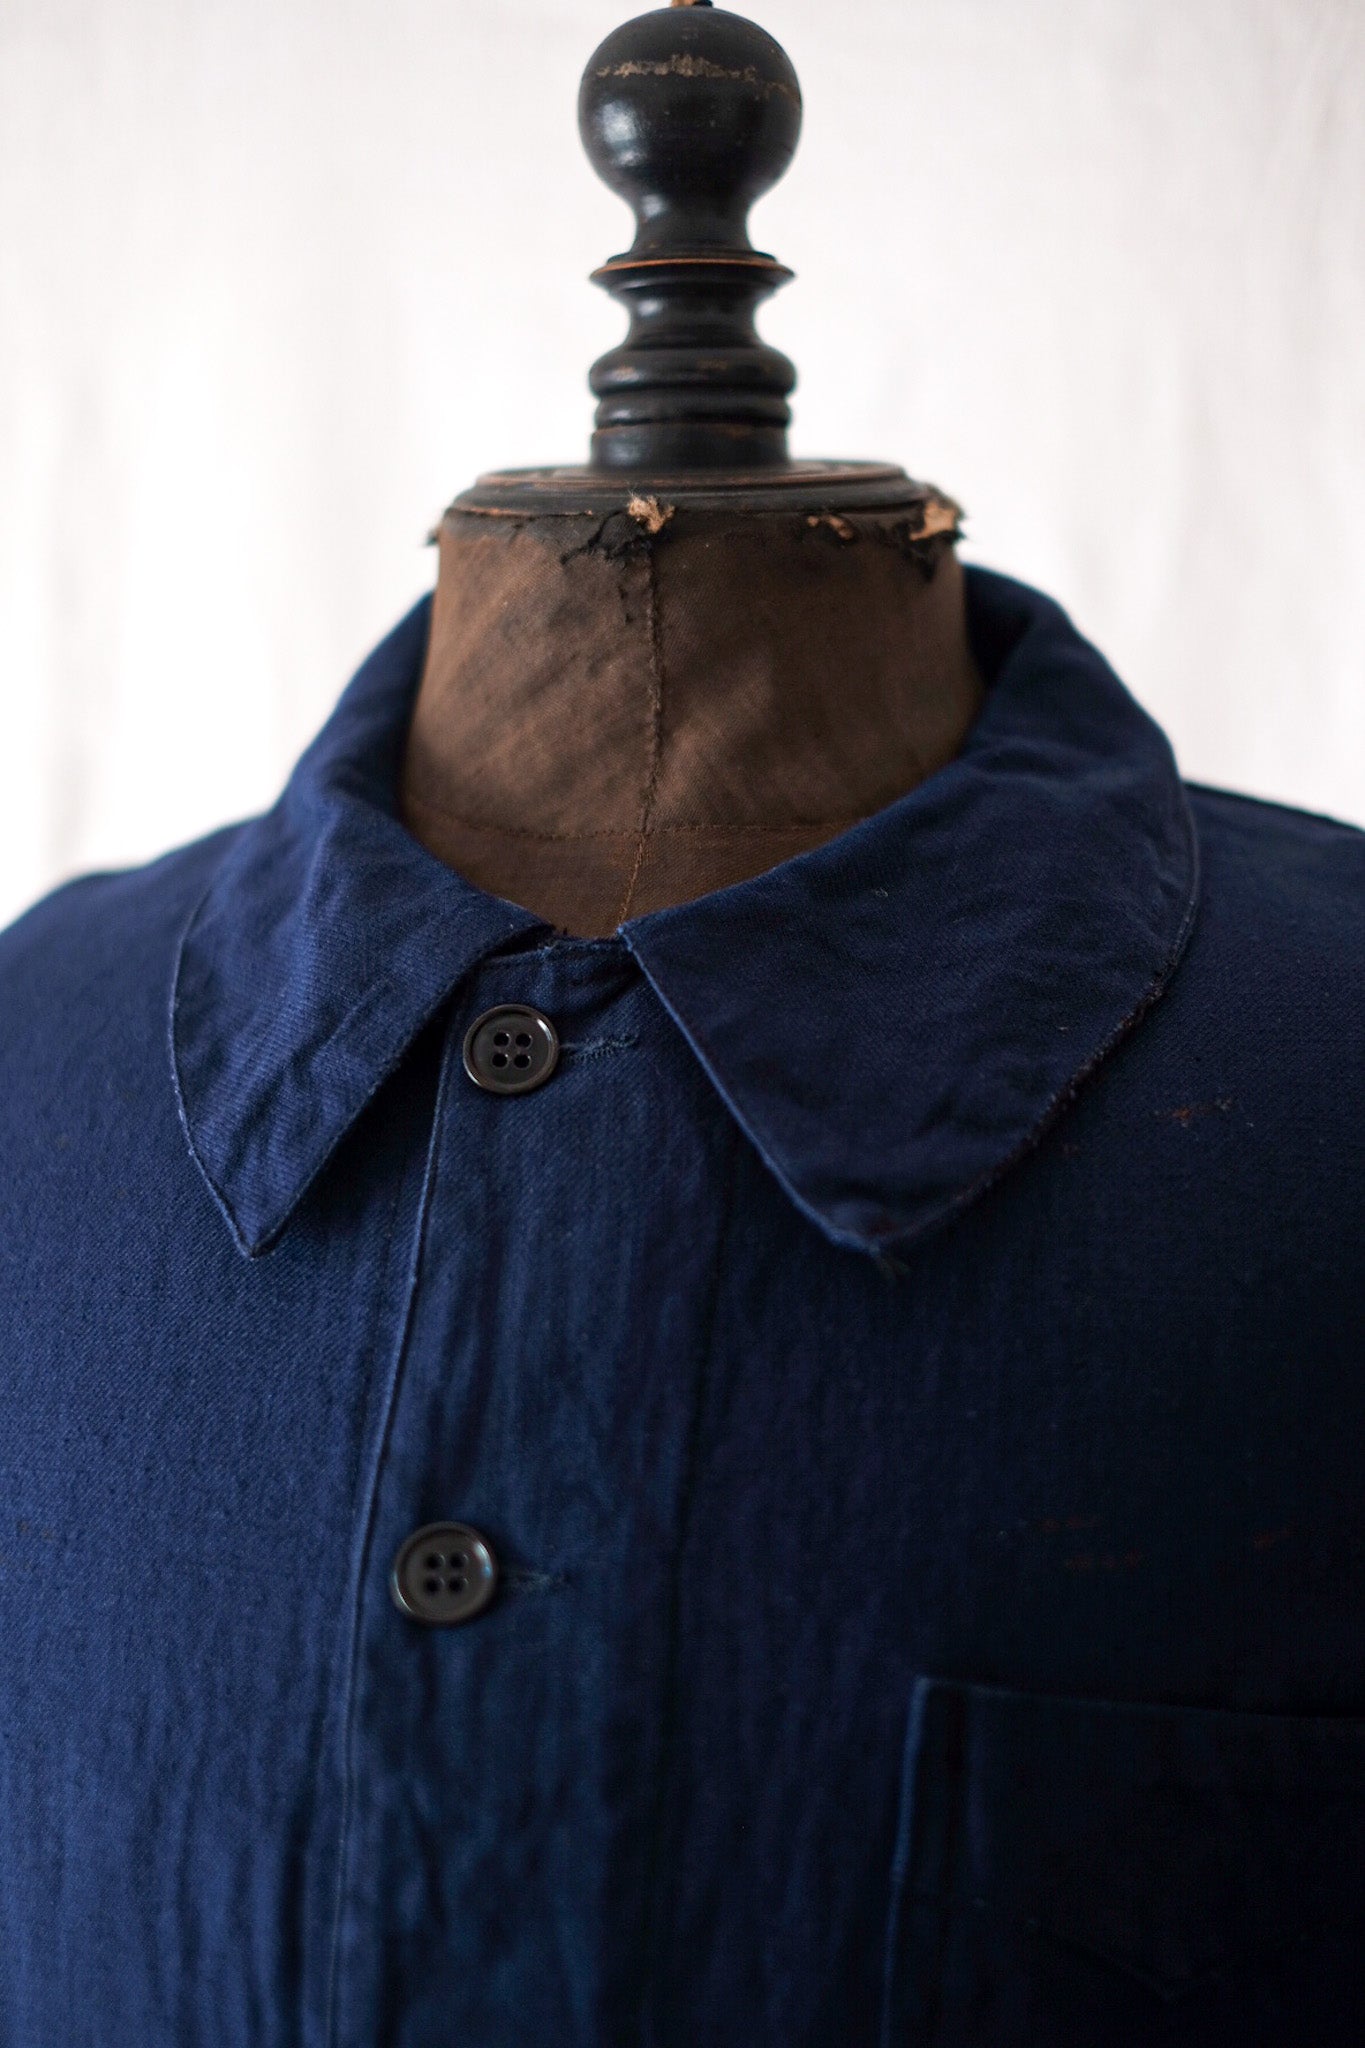 [~ 40's] French Vintage Indigo Cotton Linen Twilk Jacket